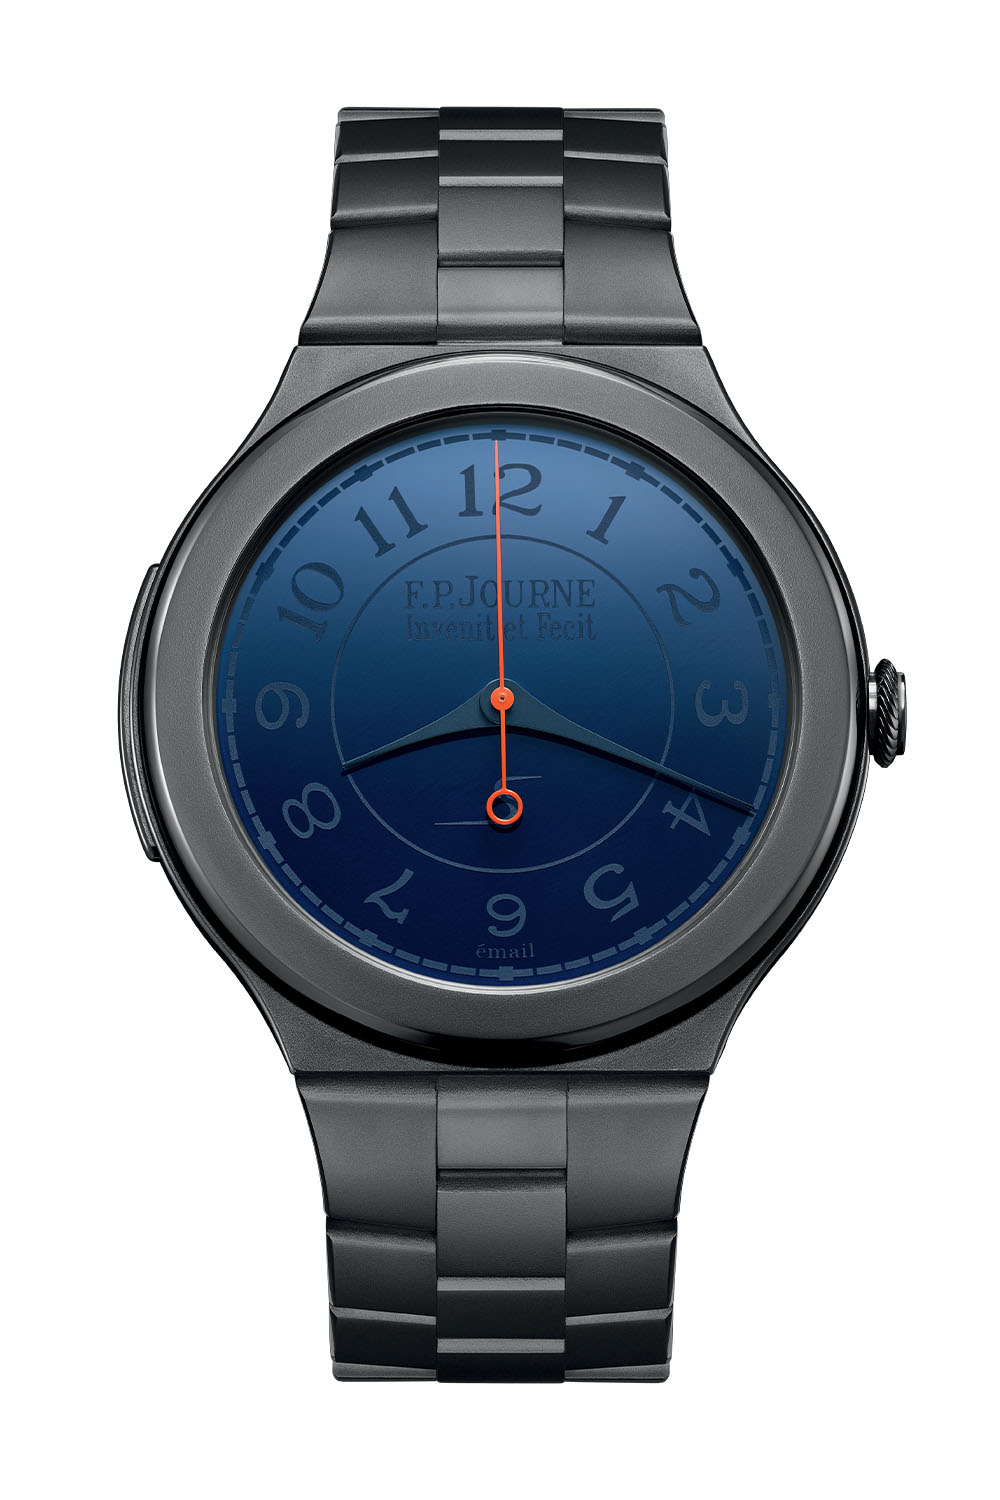 FP Journe Chronometre Furtif Bleu - Only Watch 2023 Unique Piece Tantalum Blue Enamel New Movement - 6